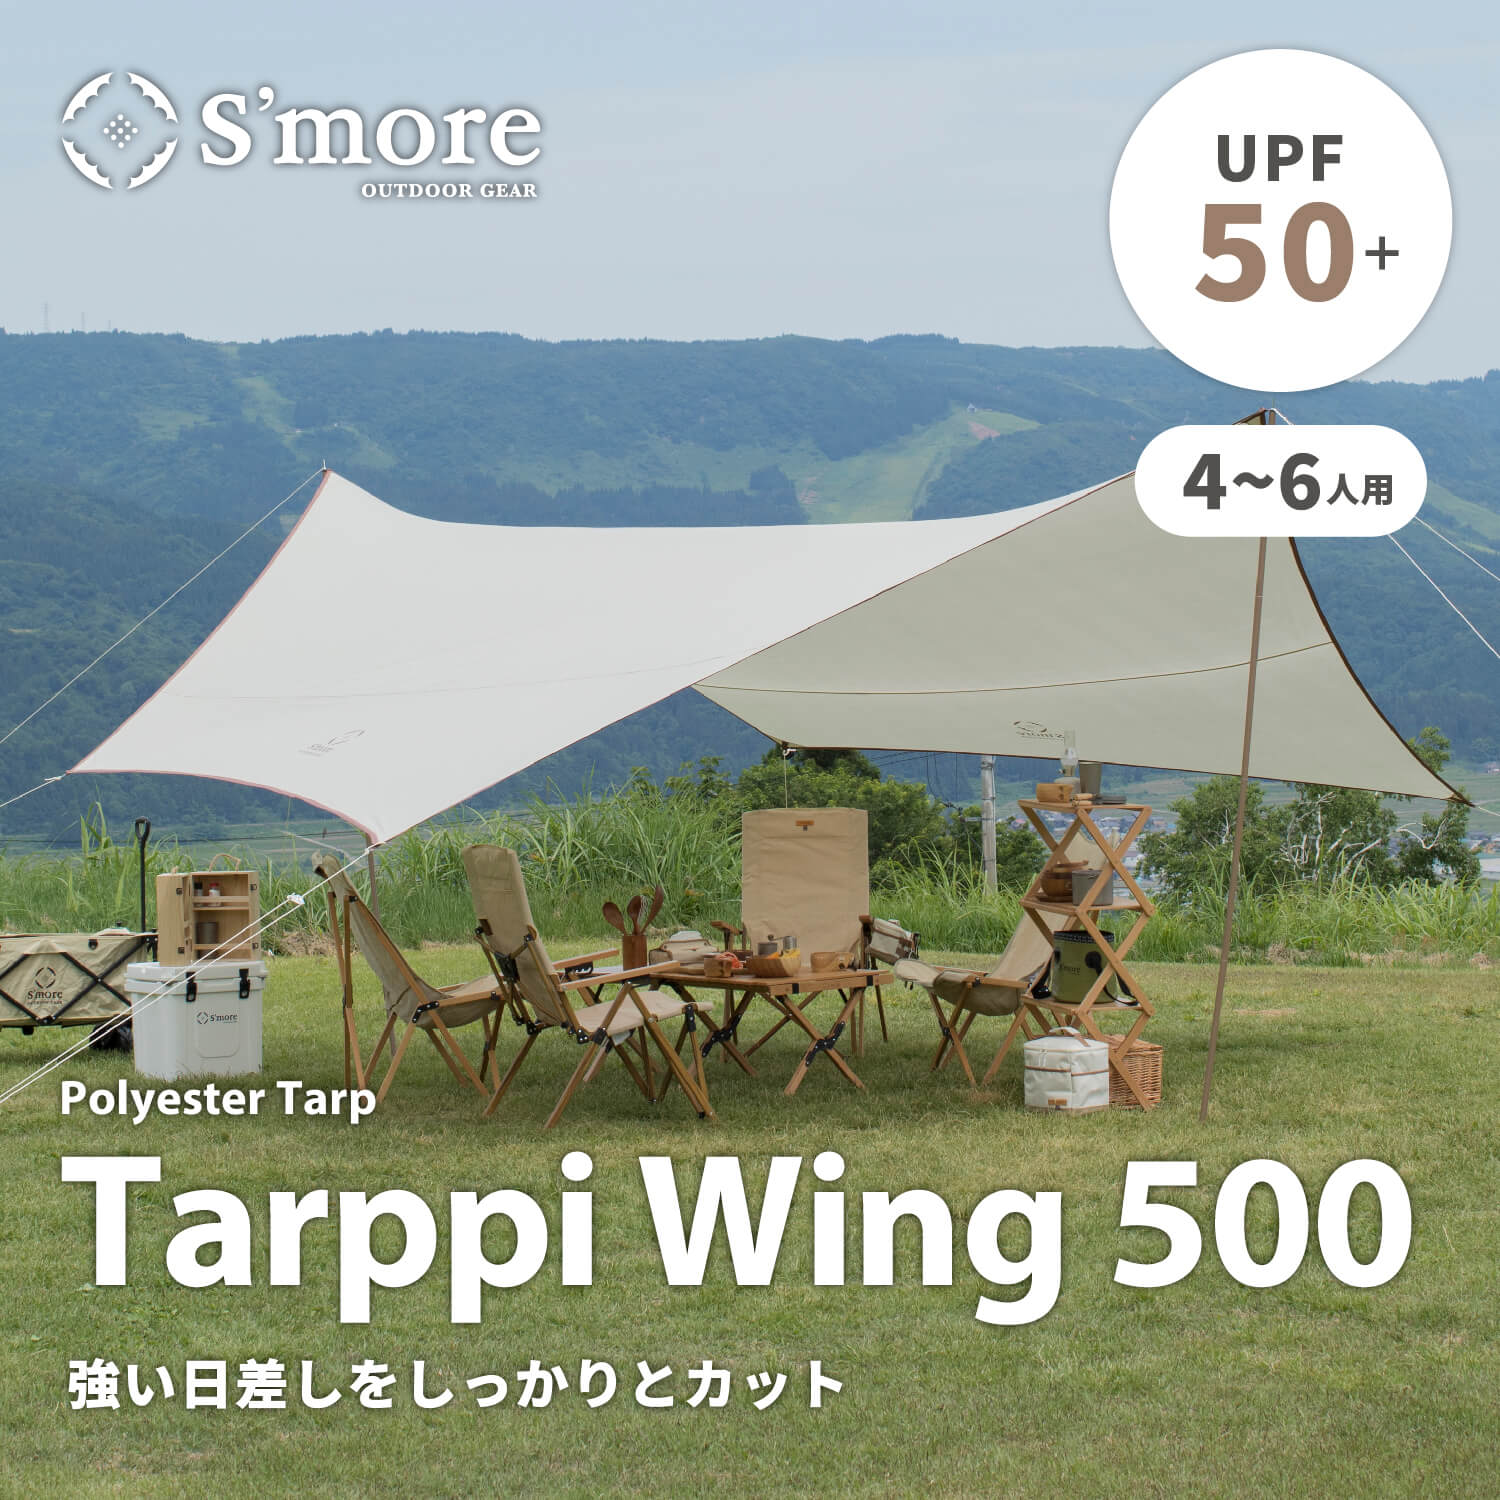 Tarppi Wing 500 】タープウイング500 – S'more